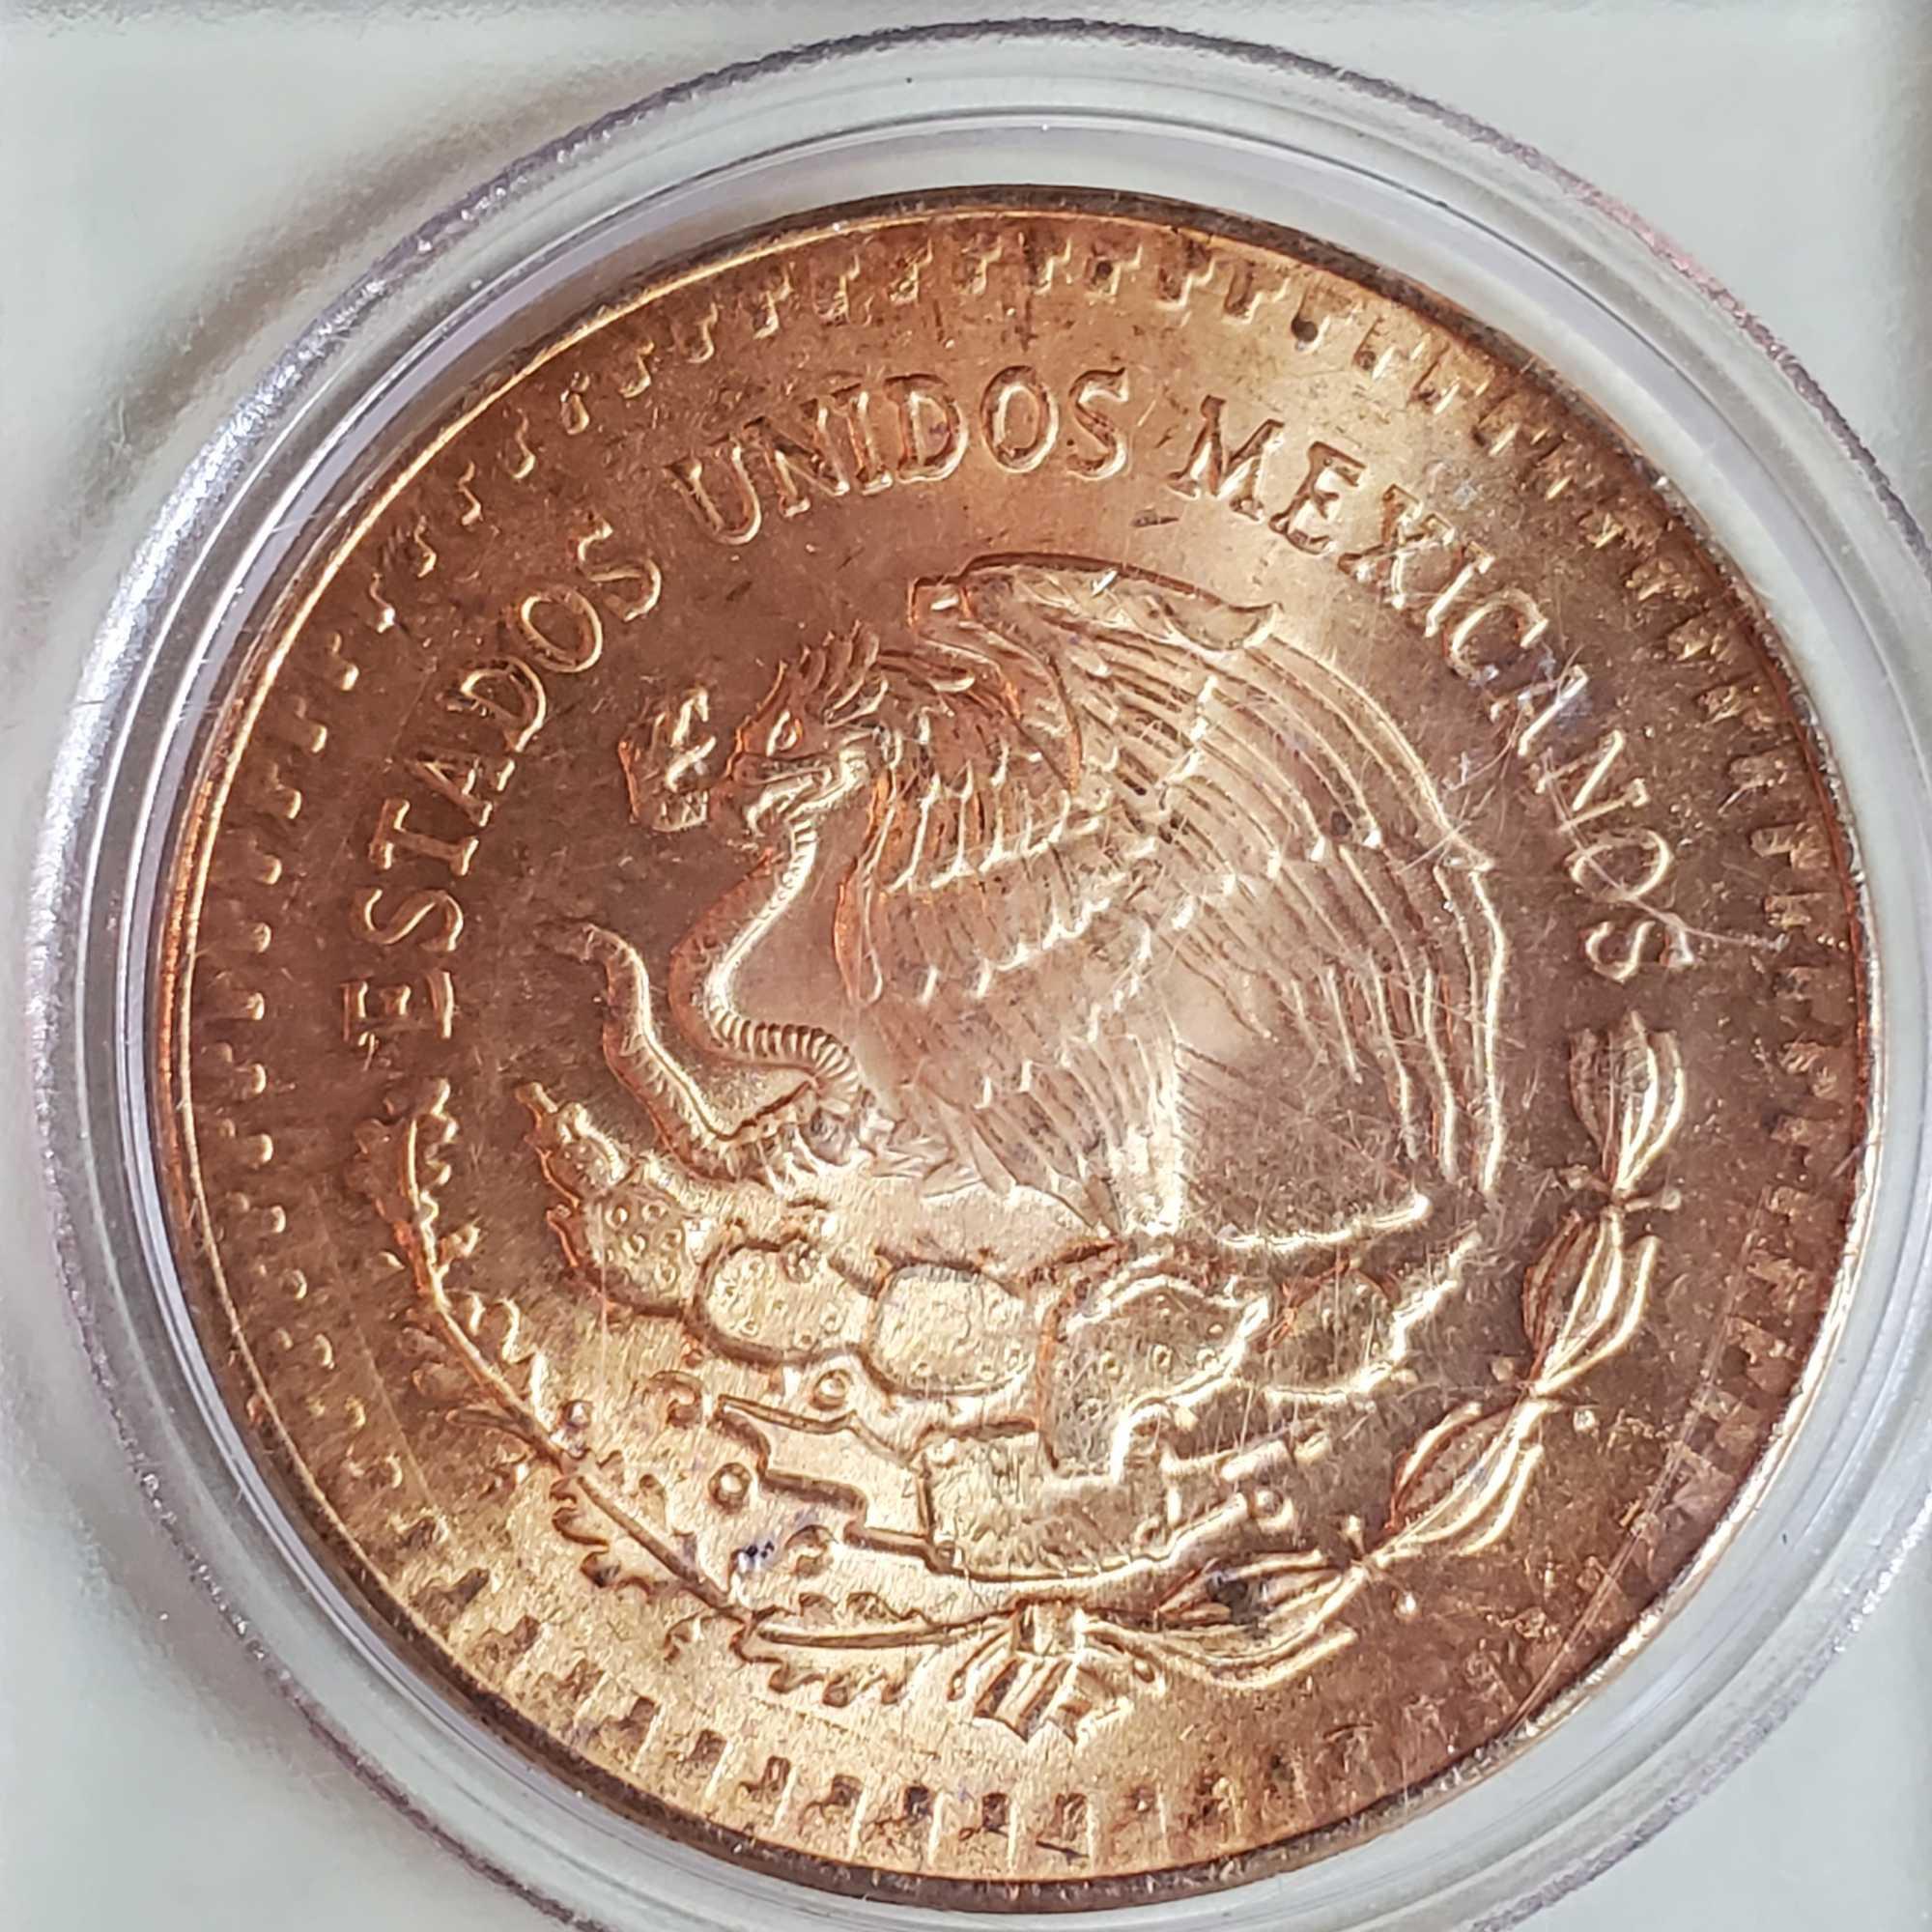 4 1985 Mexico Gold Gilded 1oz. .999 Silver Libertads